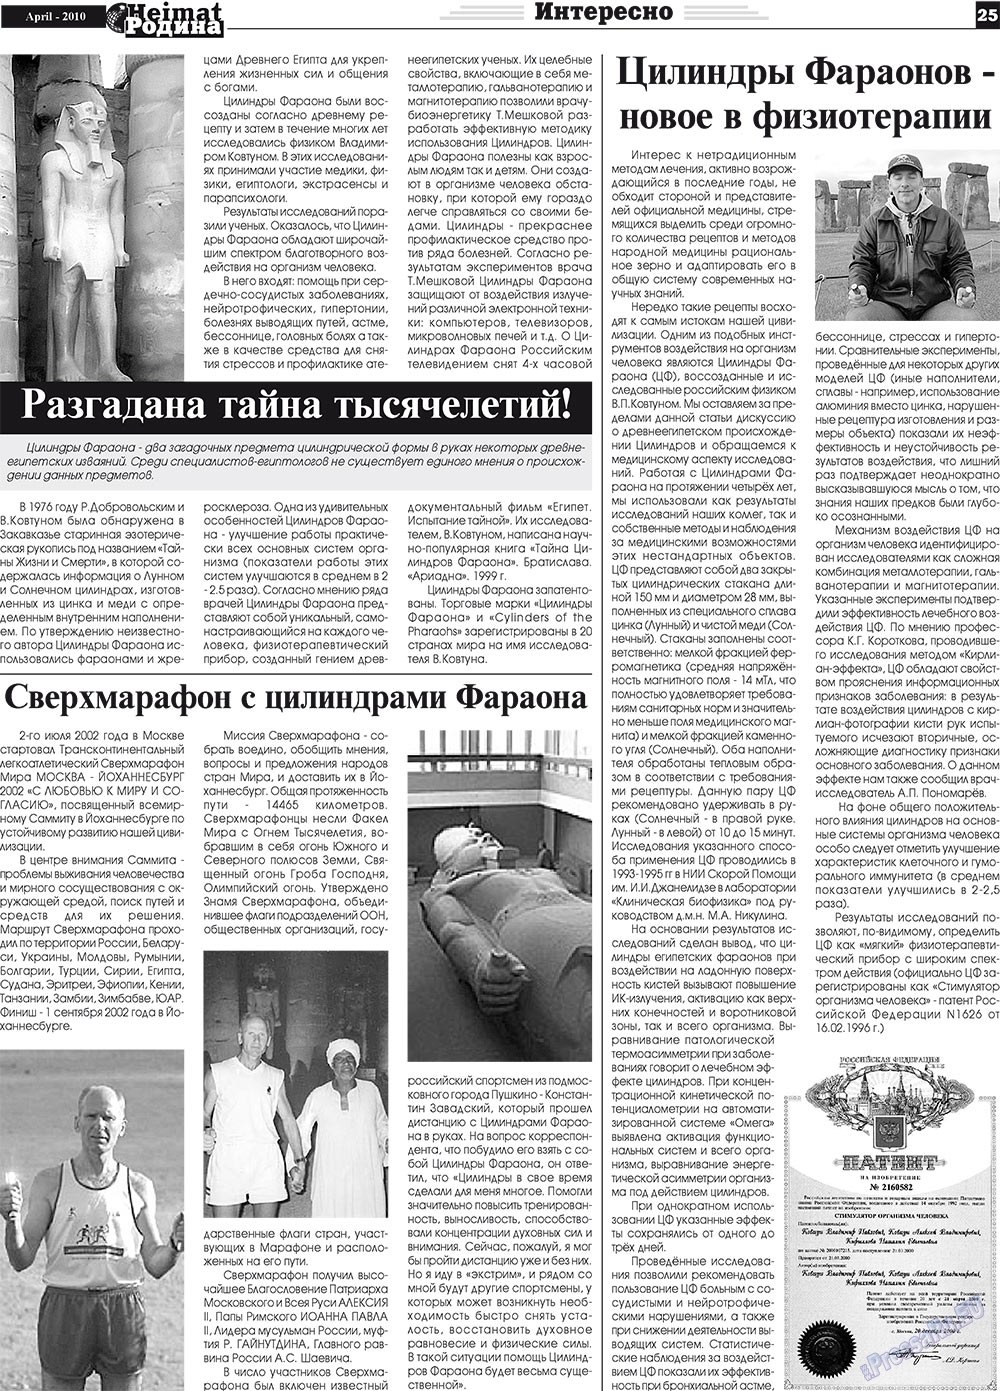 Heimat-Родина (газета). 2010 год, номер 4, стр. 25